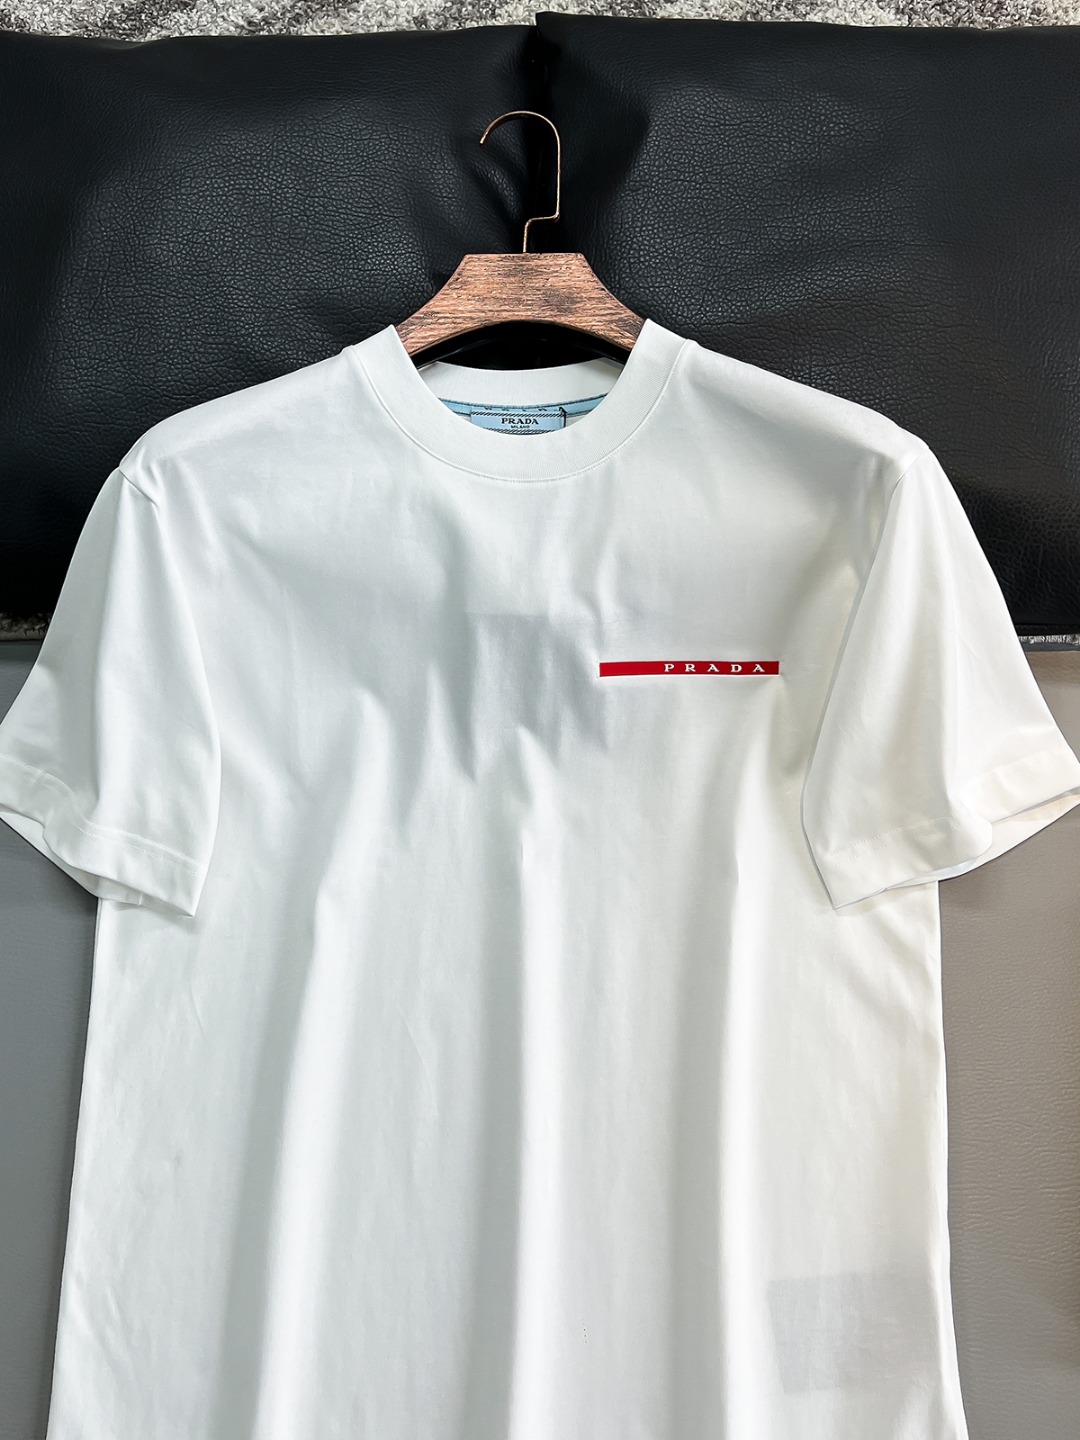 普拉达2024ss最新款短袖T恤原标定制面料手感柔软穿着舒适做工精细.上身效果无敌帅气7️色码数S-2X